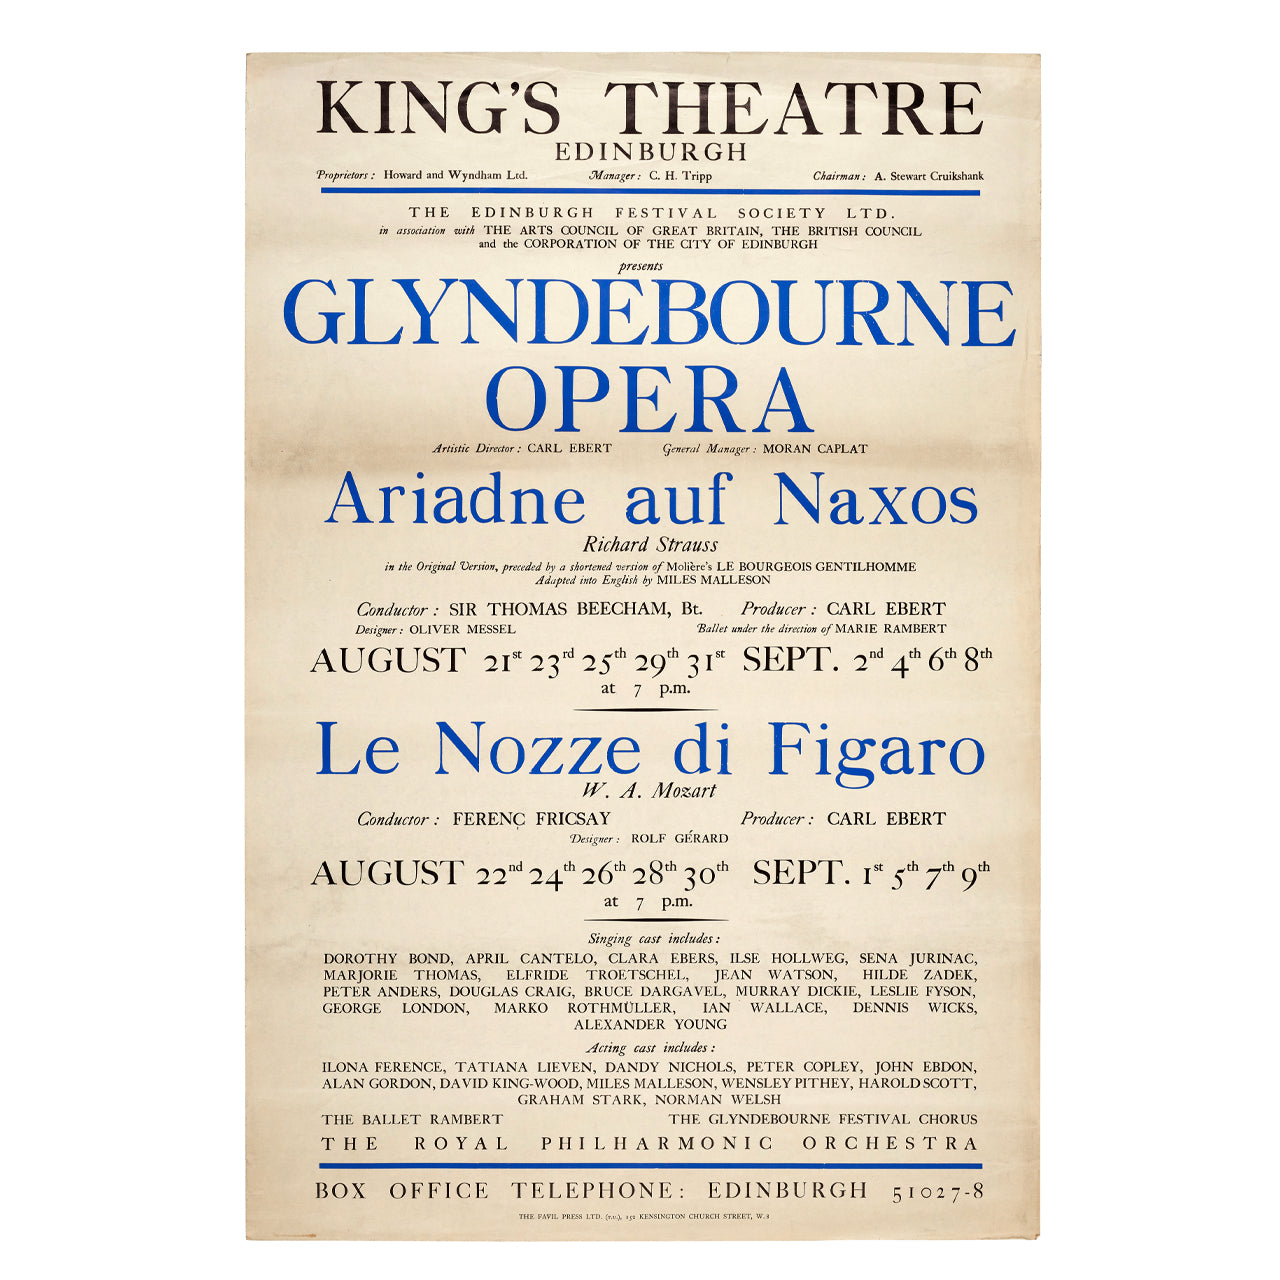 Glyndebourne Opera at the Edinburgh Festival 1950 Poster Glyndebourne Shop